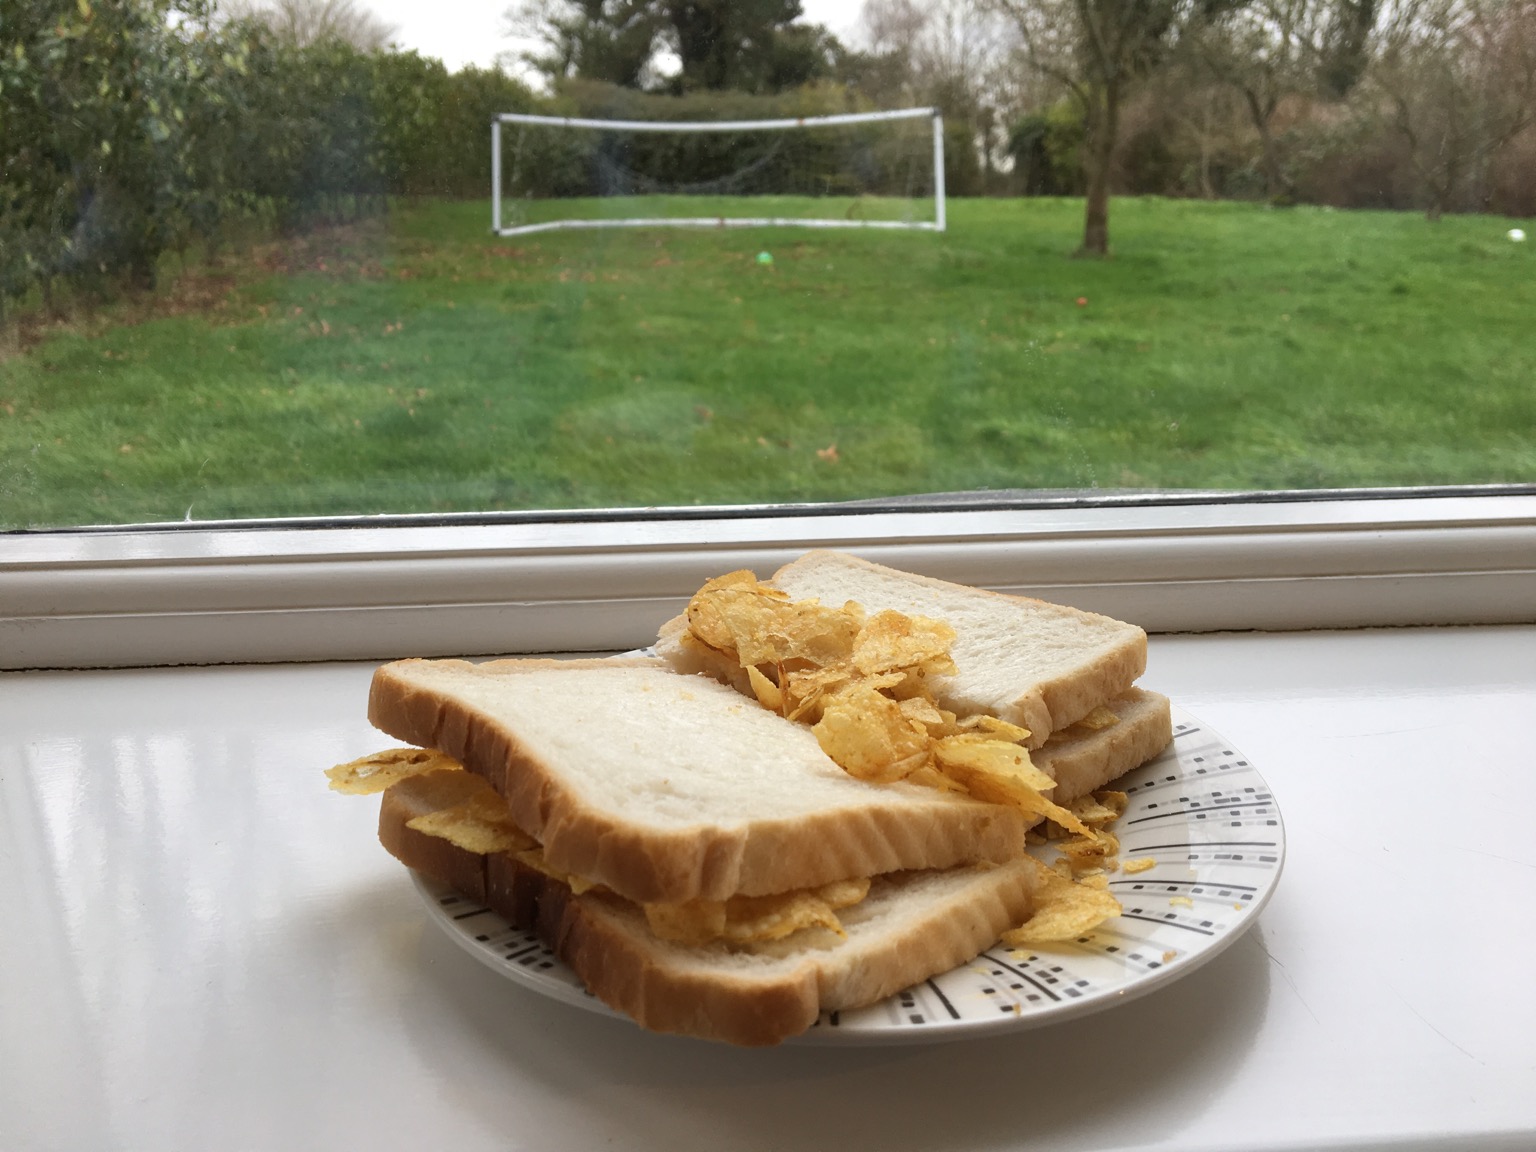 Crisp sandwich wistfully wishing it could play football